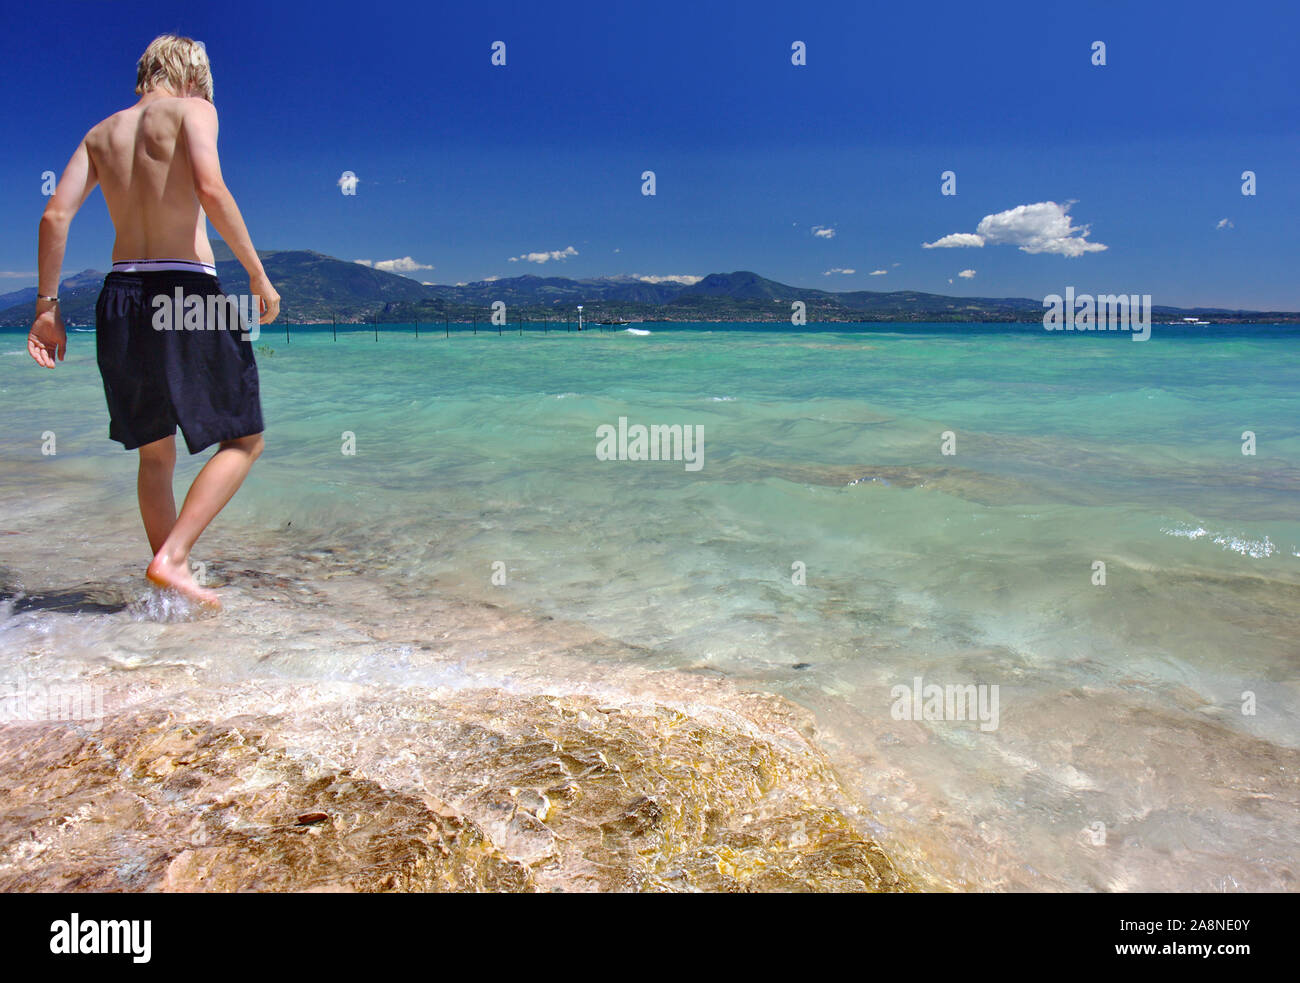 Un ragazzo nuota sulla spiaggia sulle rive del lago di Garda vicino a Sirmione town, Italia Foto Stock